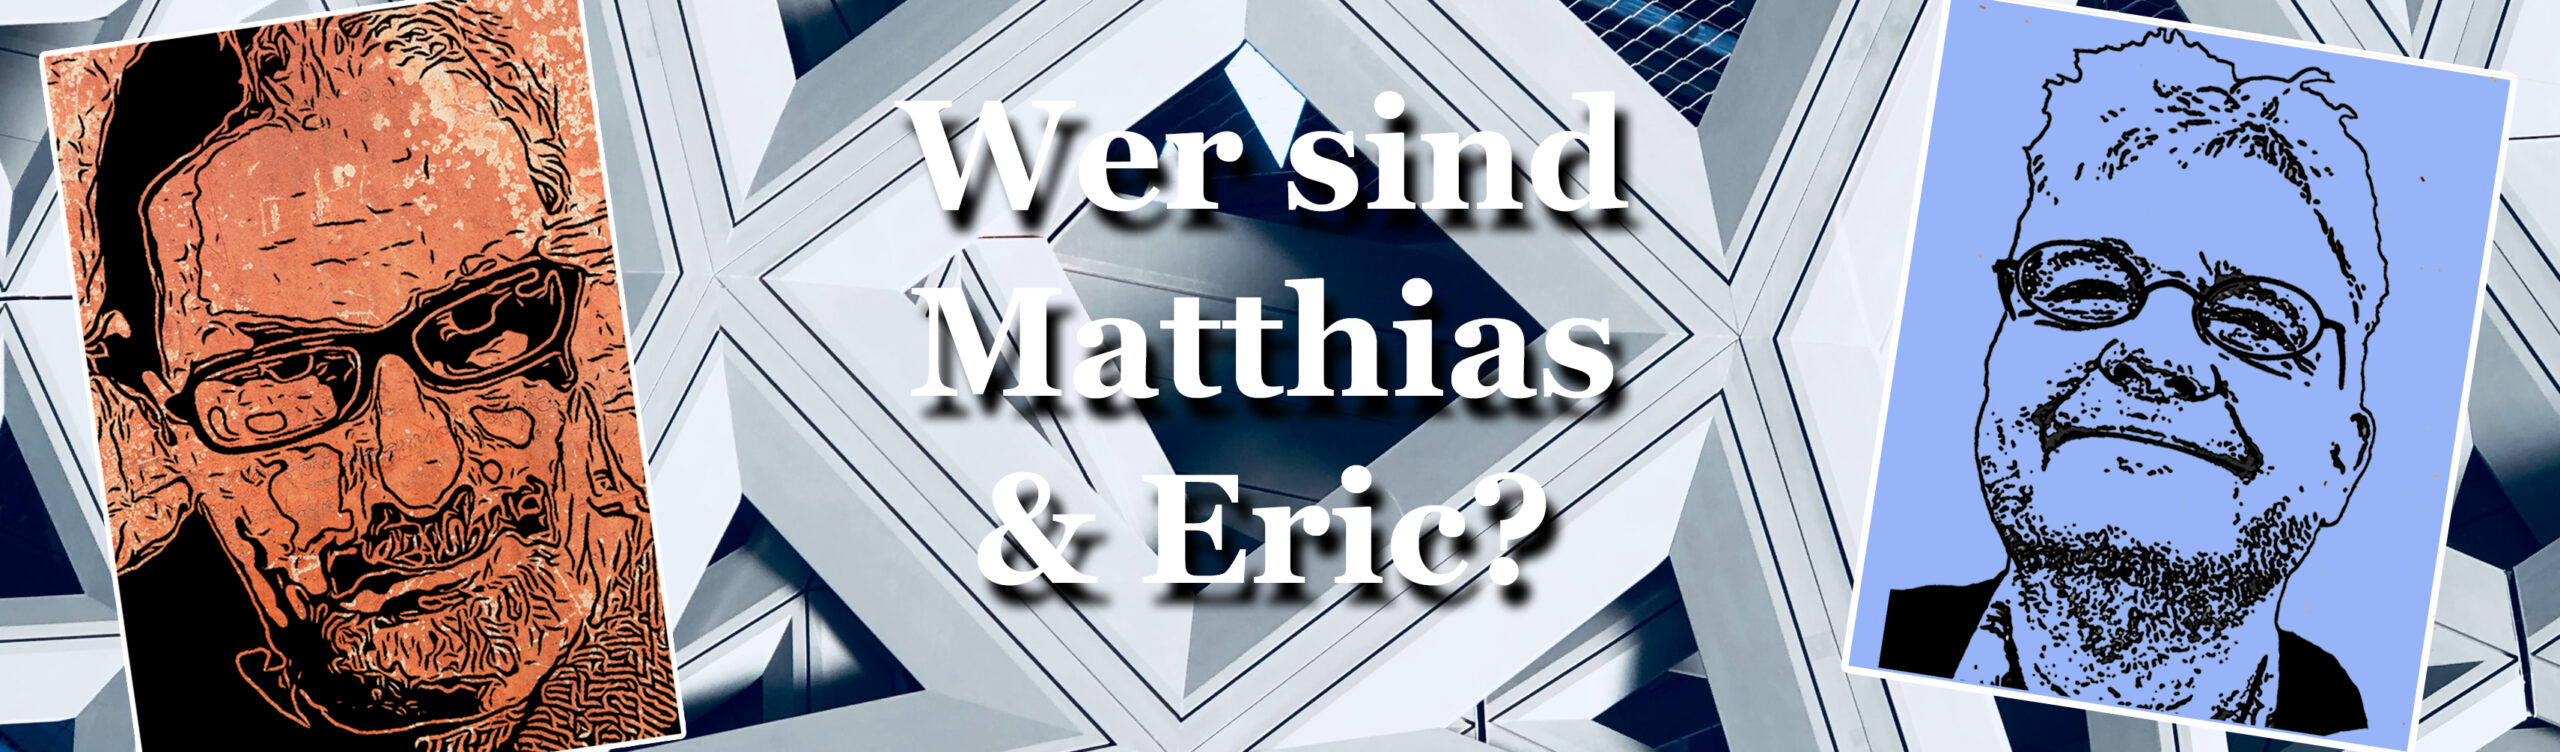 Wer sind Matthias und Eric?